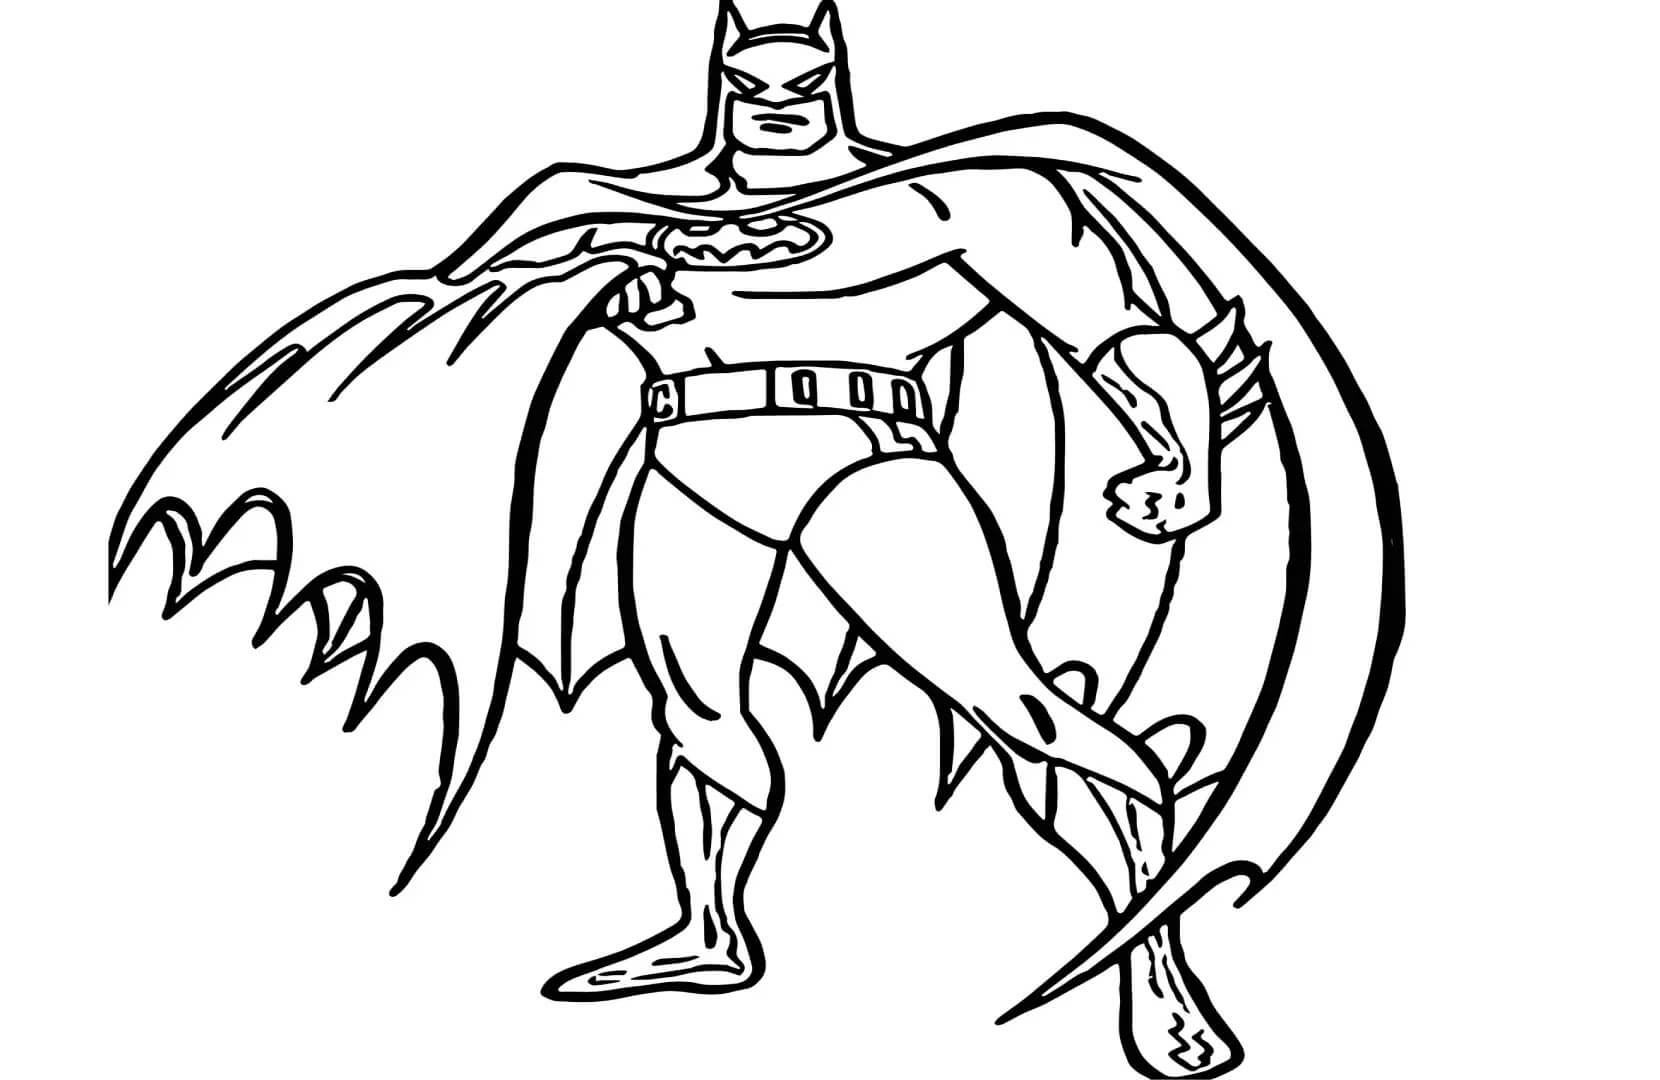 Batman Sosteniendo Su Capa Para Colorear Imprimir E Dibujar